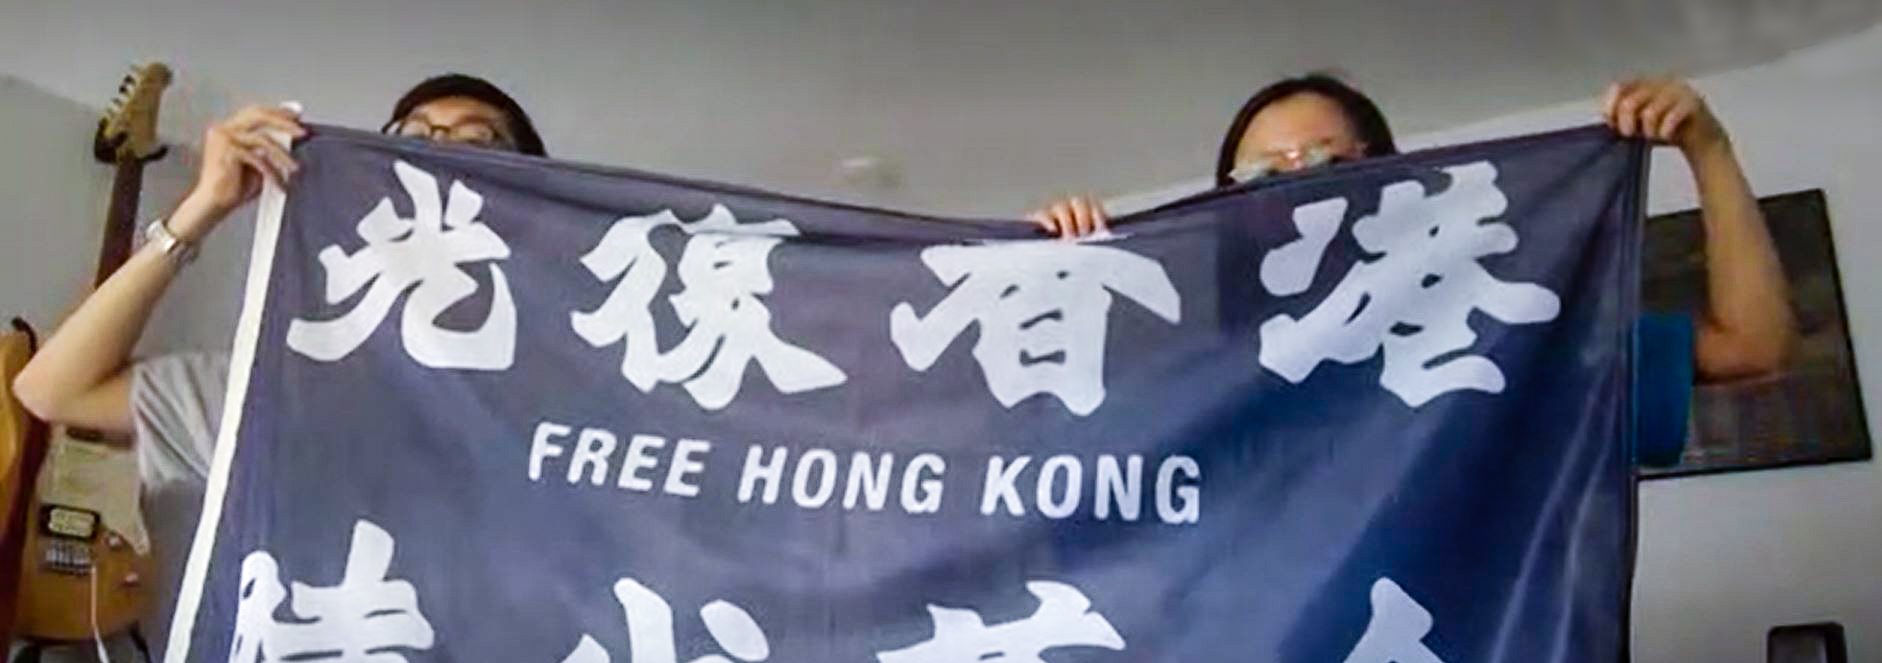 Bo (links) und Lian (rechts) mit einer Flagge der Hongkonger Demokratiebewegung. Sie sprechen über die Proteste in Hongkong und Hamburg. Foto: Pia Röpke.